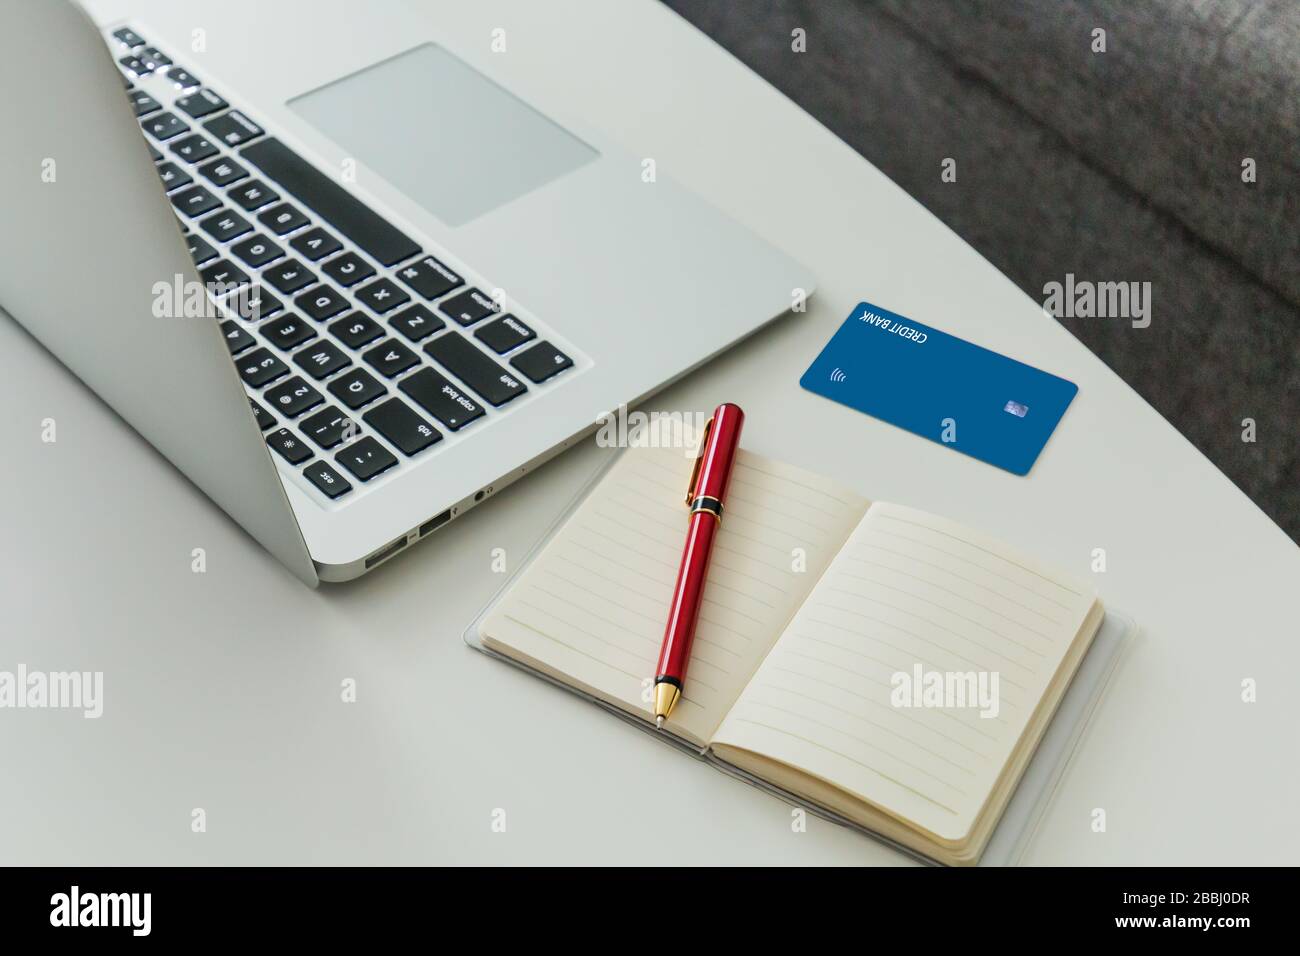 Online-Shopping-Konzept mit Laptop, Kreditkarte und Notebook für Einkaufsliste. Stockfoto